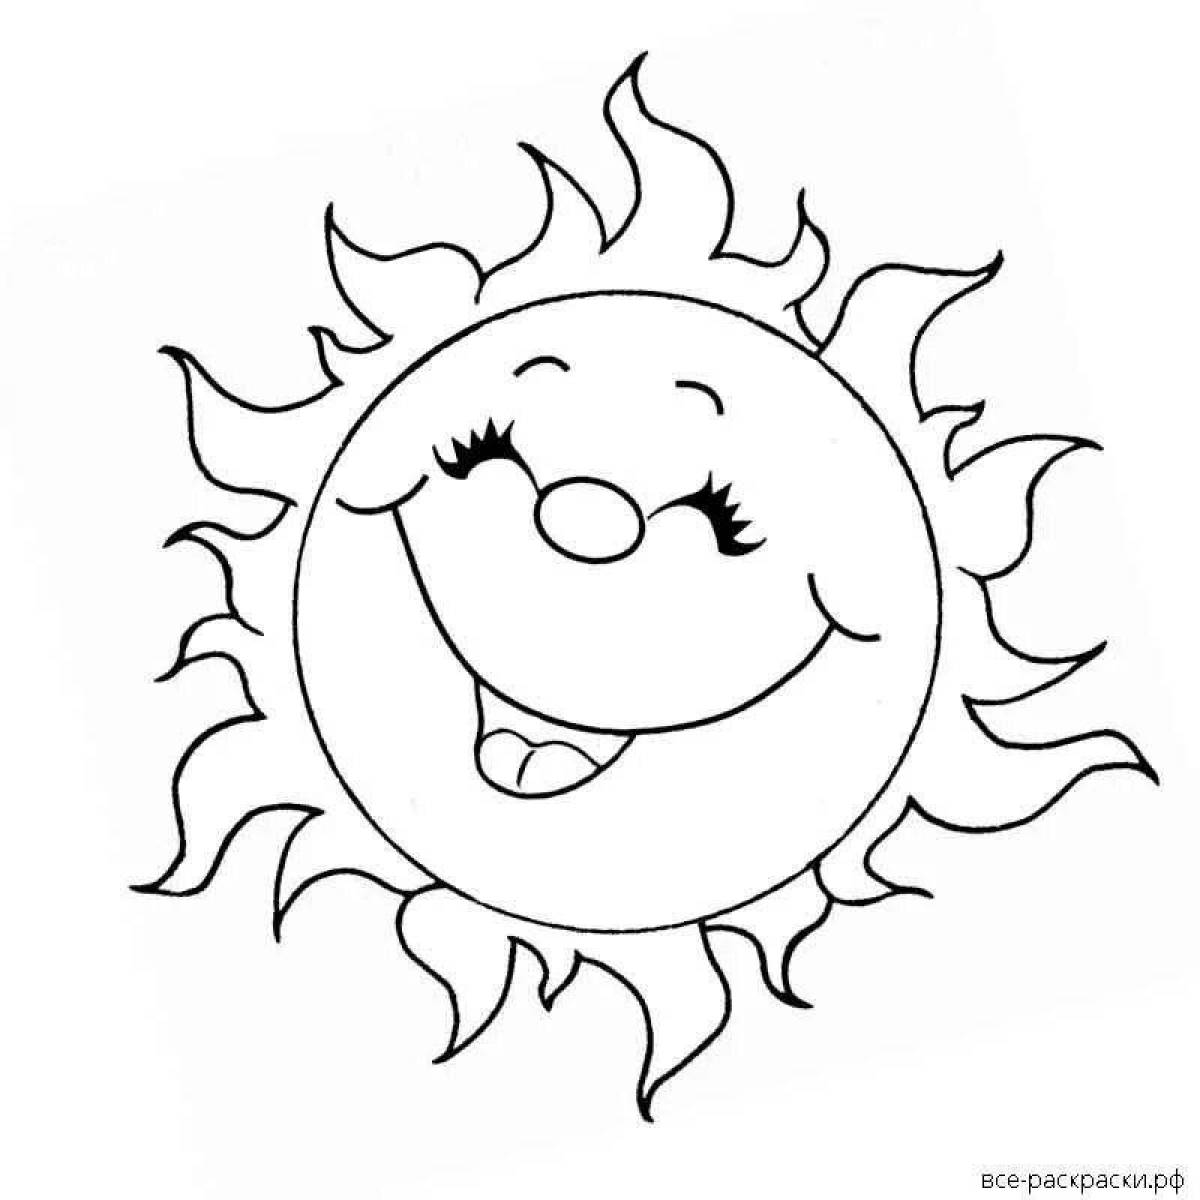 Великолепная раскраска солнечная картинка для детей